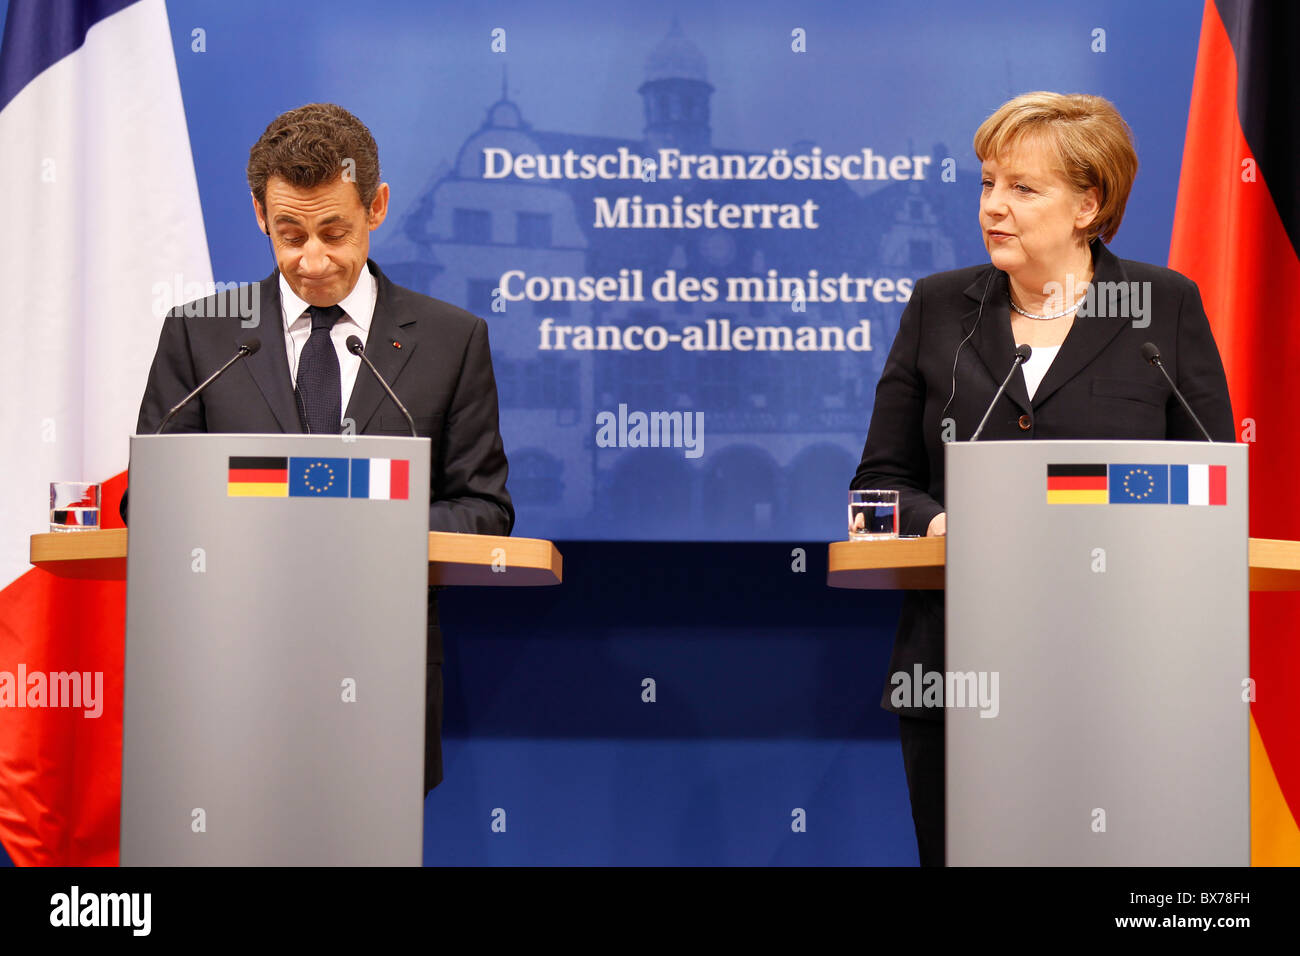 German Chancellor Angela Merkel and French President Nicolas Sarkozy in Freiburg on Friday, 10.12.2010 Stock Photo